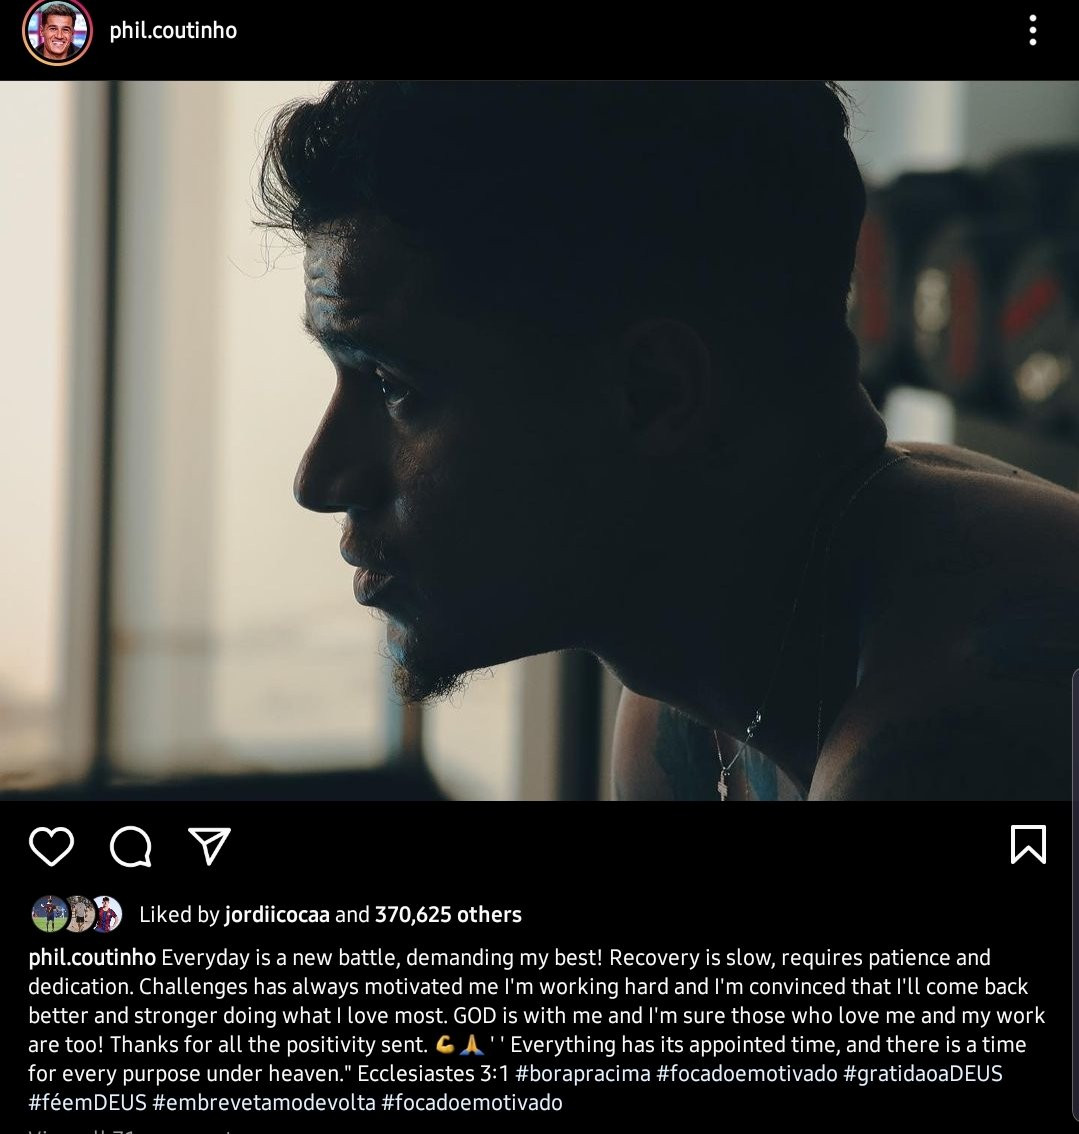 Mensaje de Coutinho vía redes sociales / Instagram